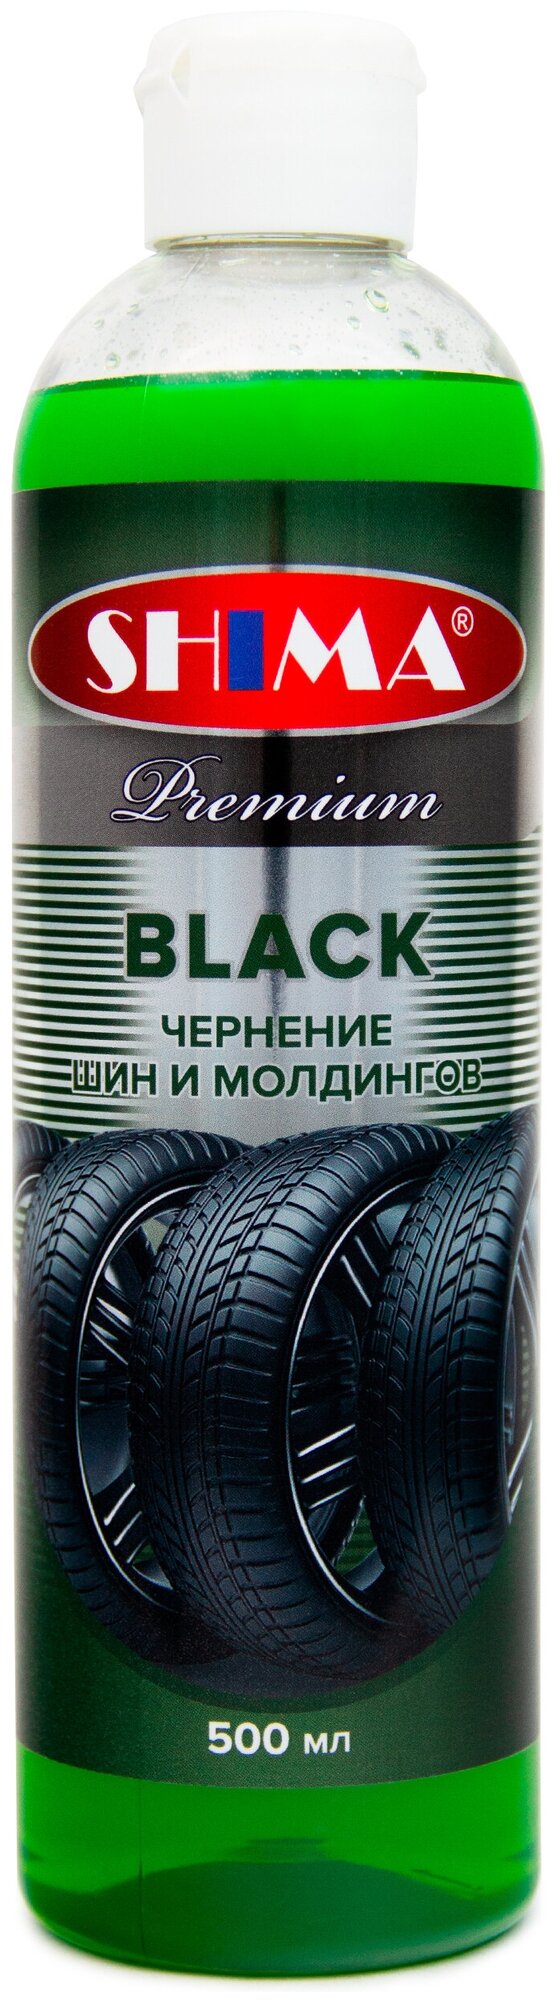 Чернитель резины SHIMA Premium BLACK (Чернитель шин) чернение шин и молдингов 500 мл Art: 4631111103340